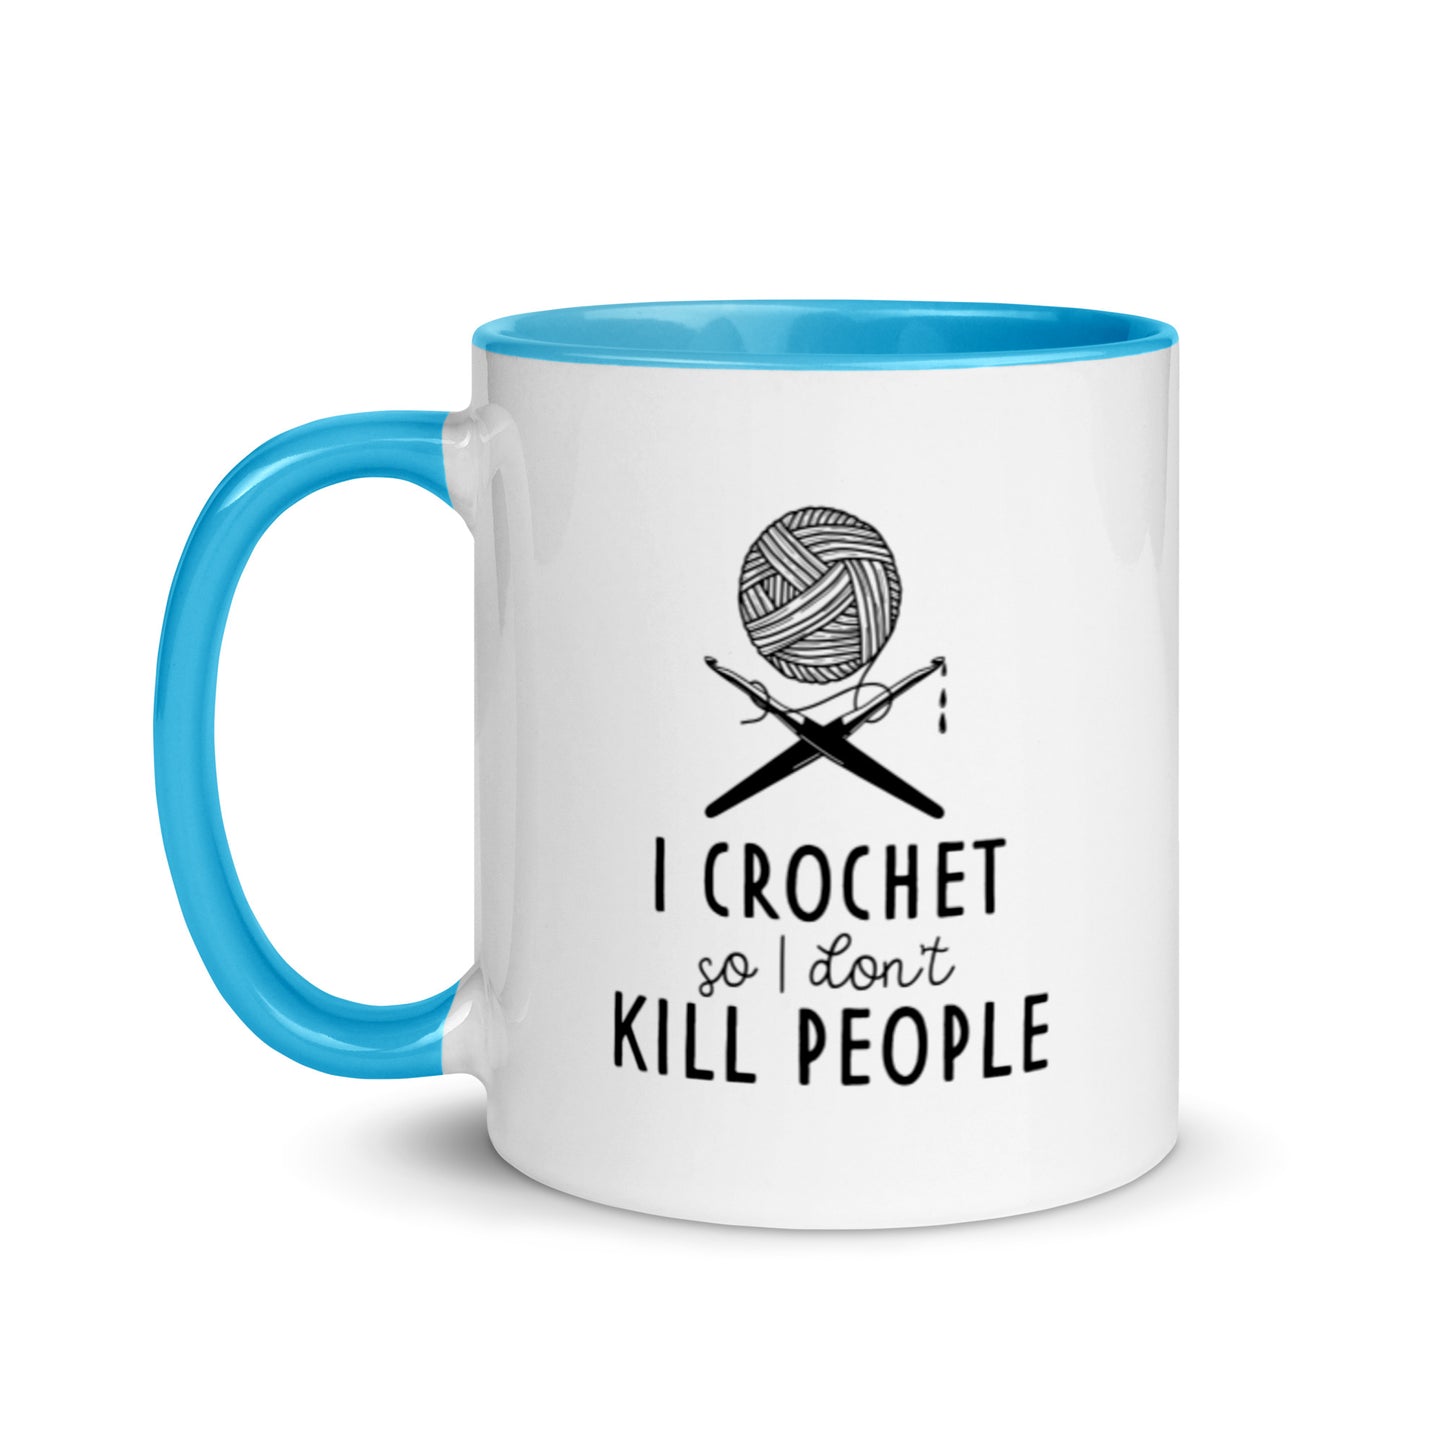 I Crochet So I Don't Kill People - Mug